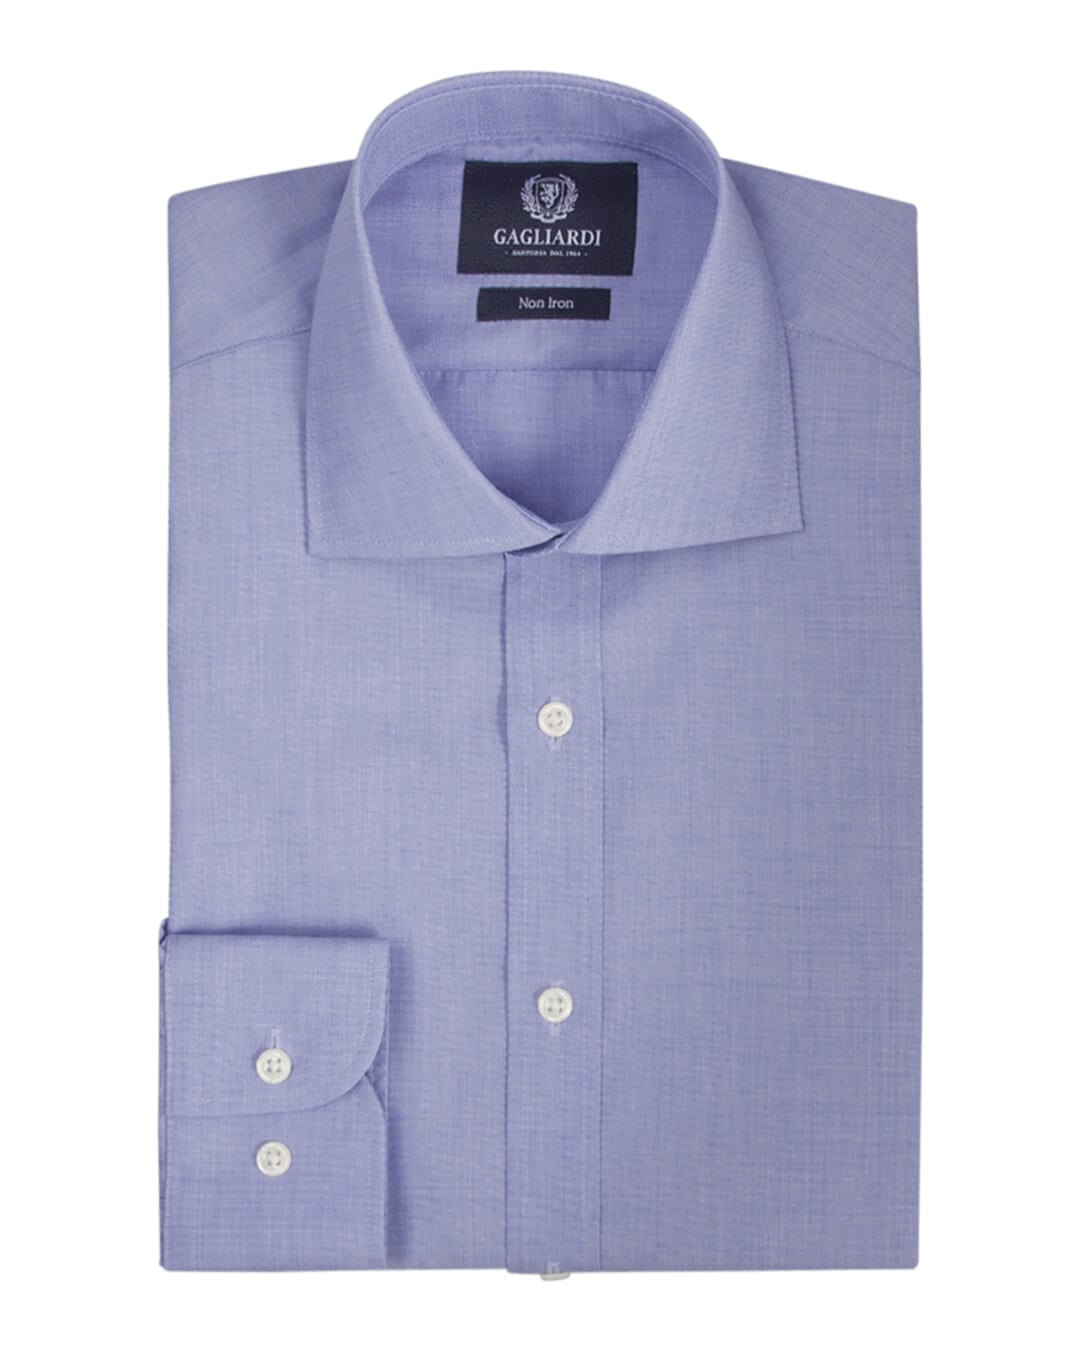 Gagliardi Shirts Gagliardi Royal Blue End On End Striped Slim Fit Cutaway Collar Shirt